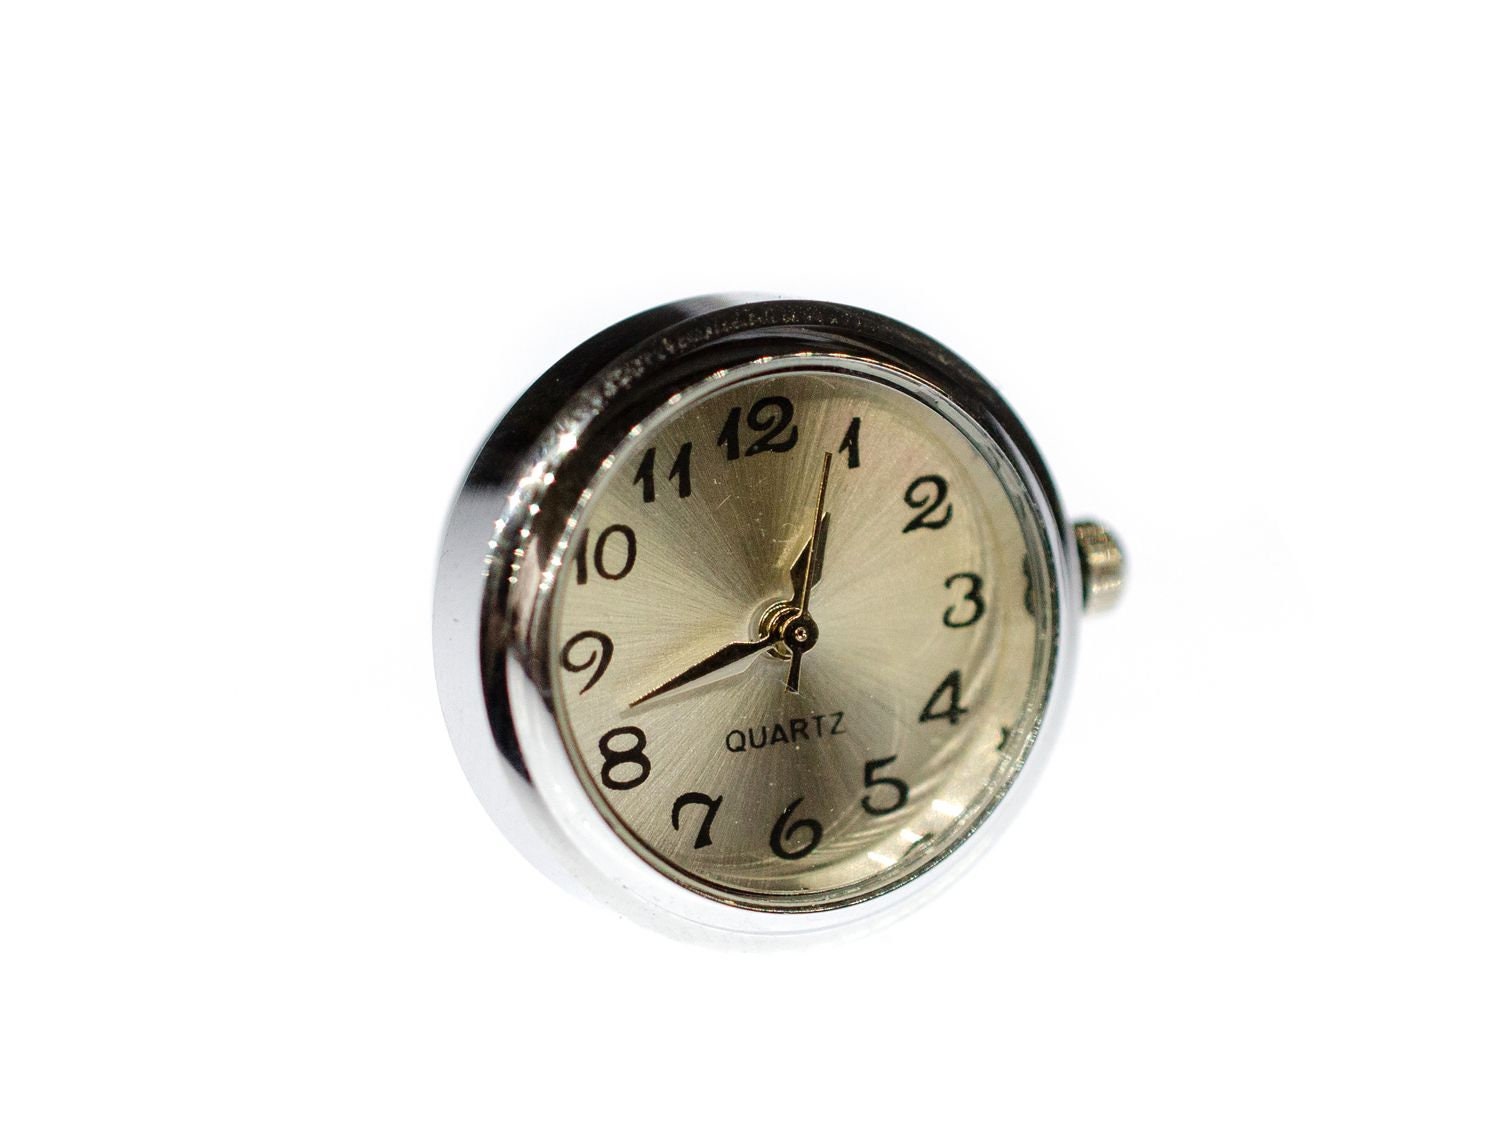 ORIGINAL MINI COOPER S One Digitaluhr Uhr Armbanduhr mit OVP Mini